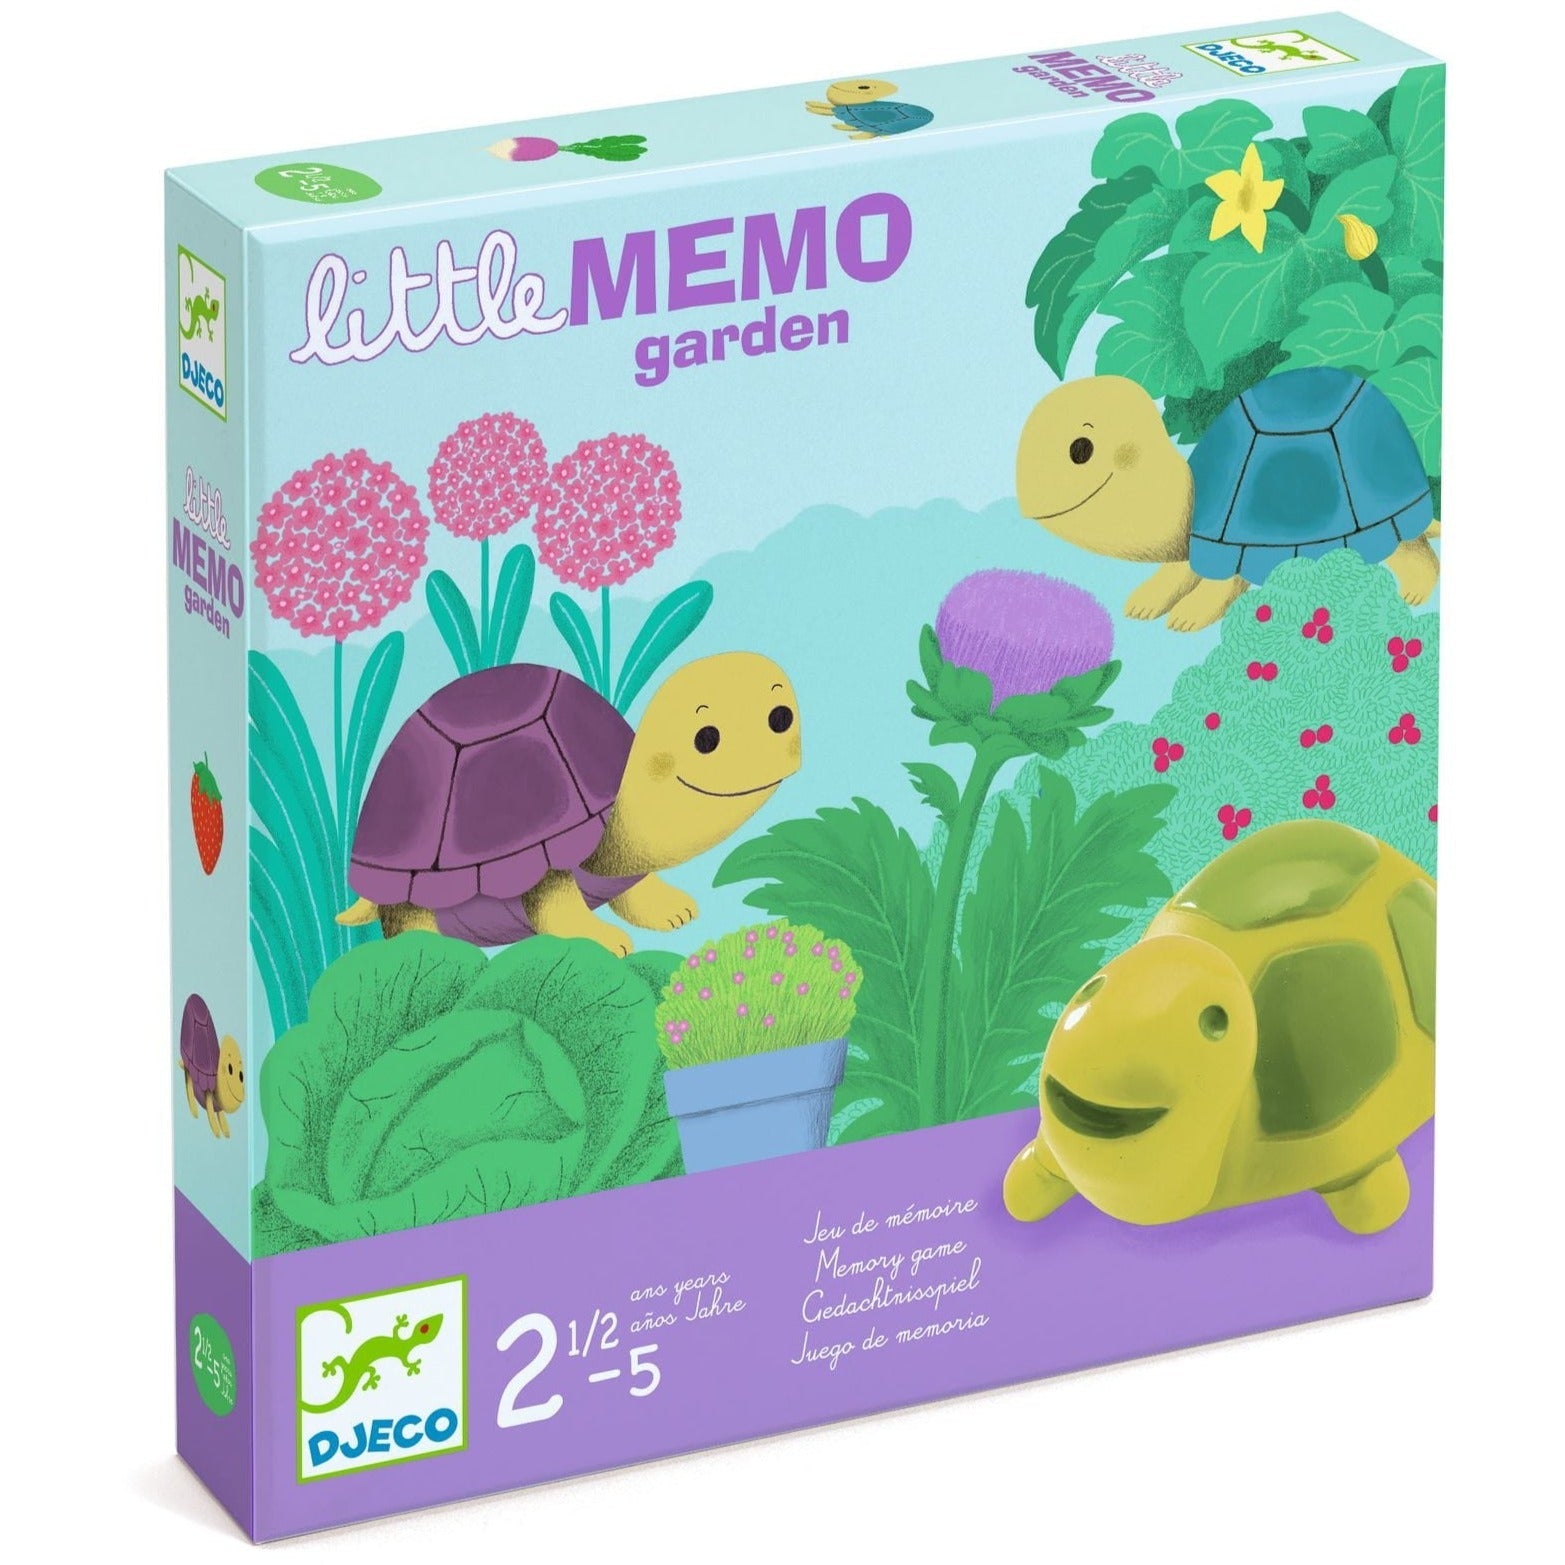 Djeco: Little Memo Garden memory game